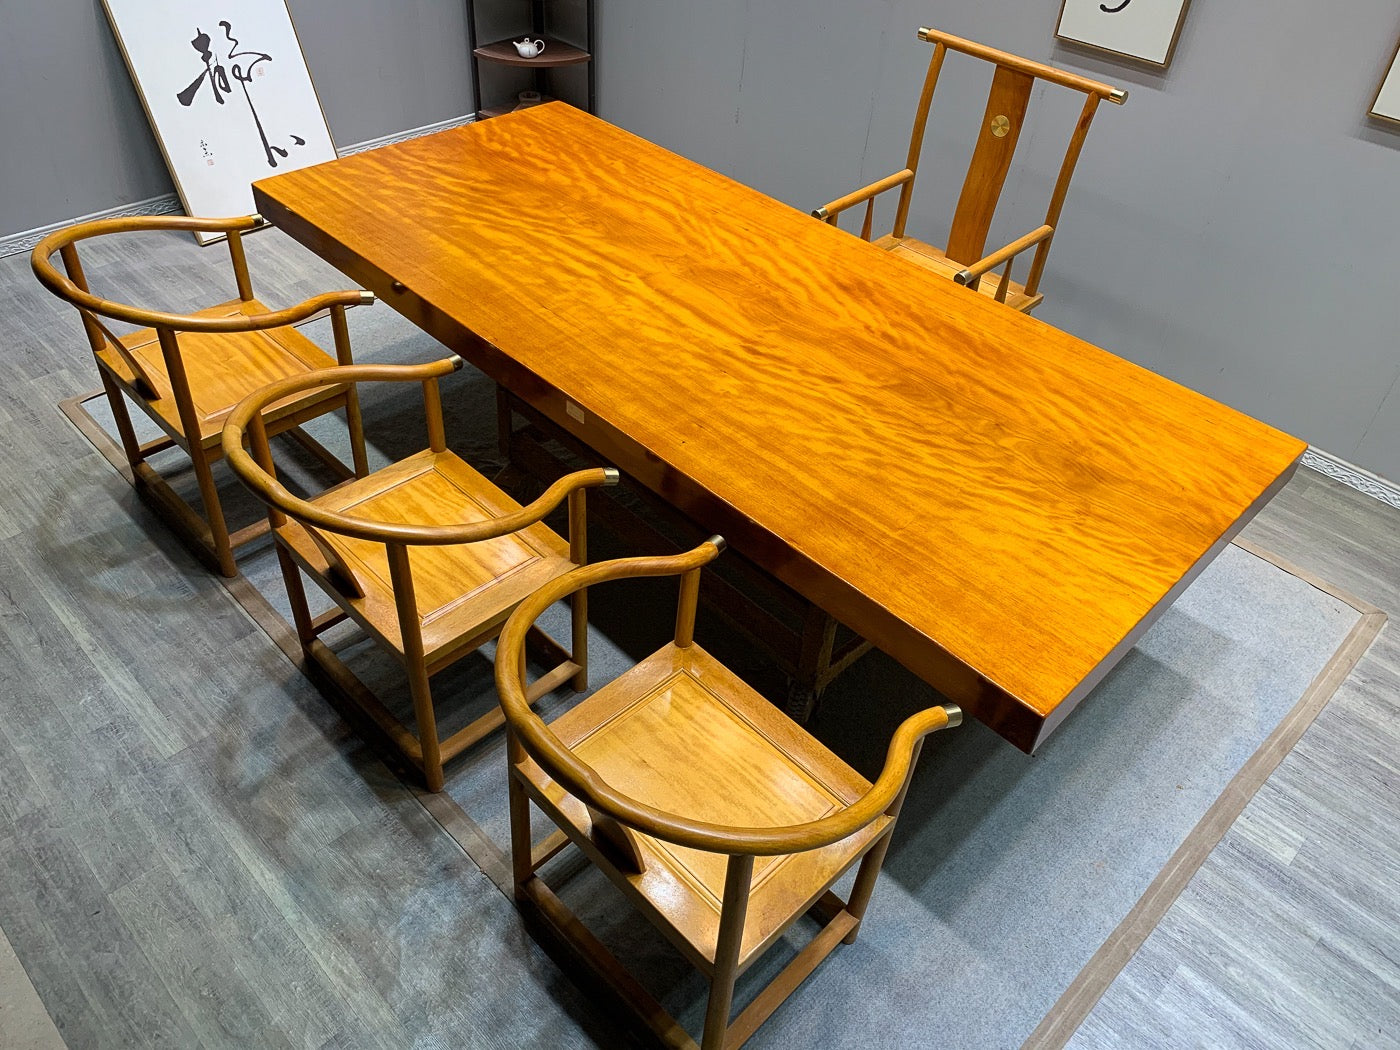 طاولة بلاطة يابانية وجراحة، طاولة مطبخ خشبية